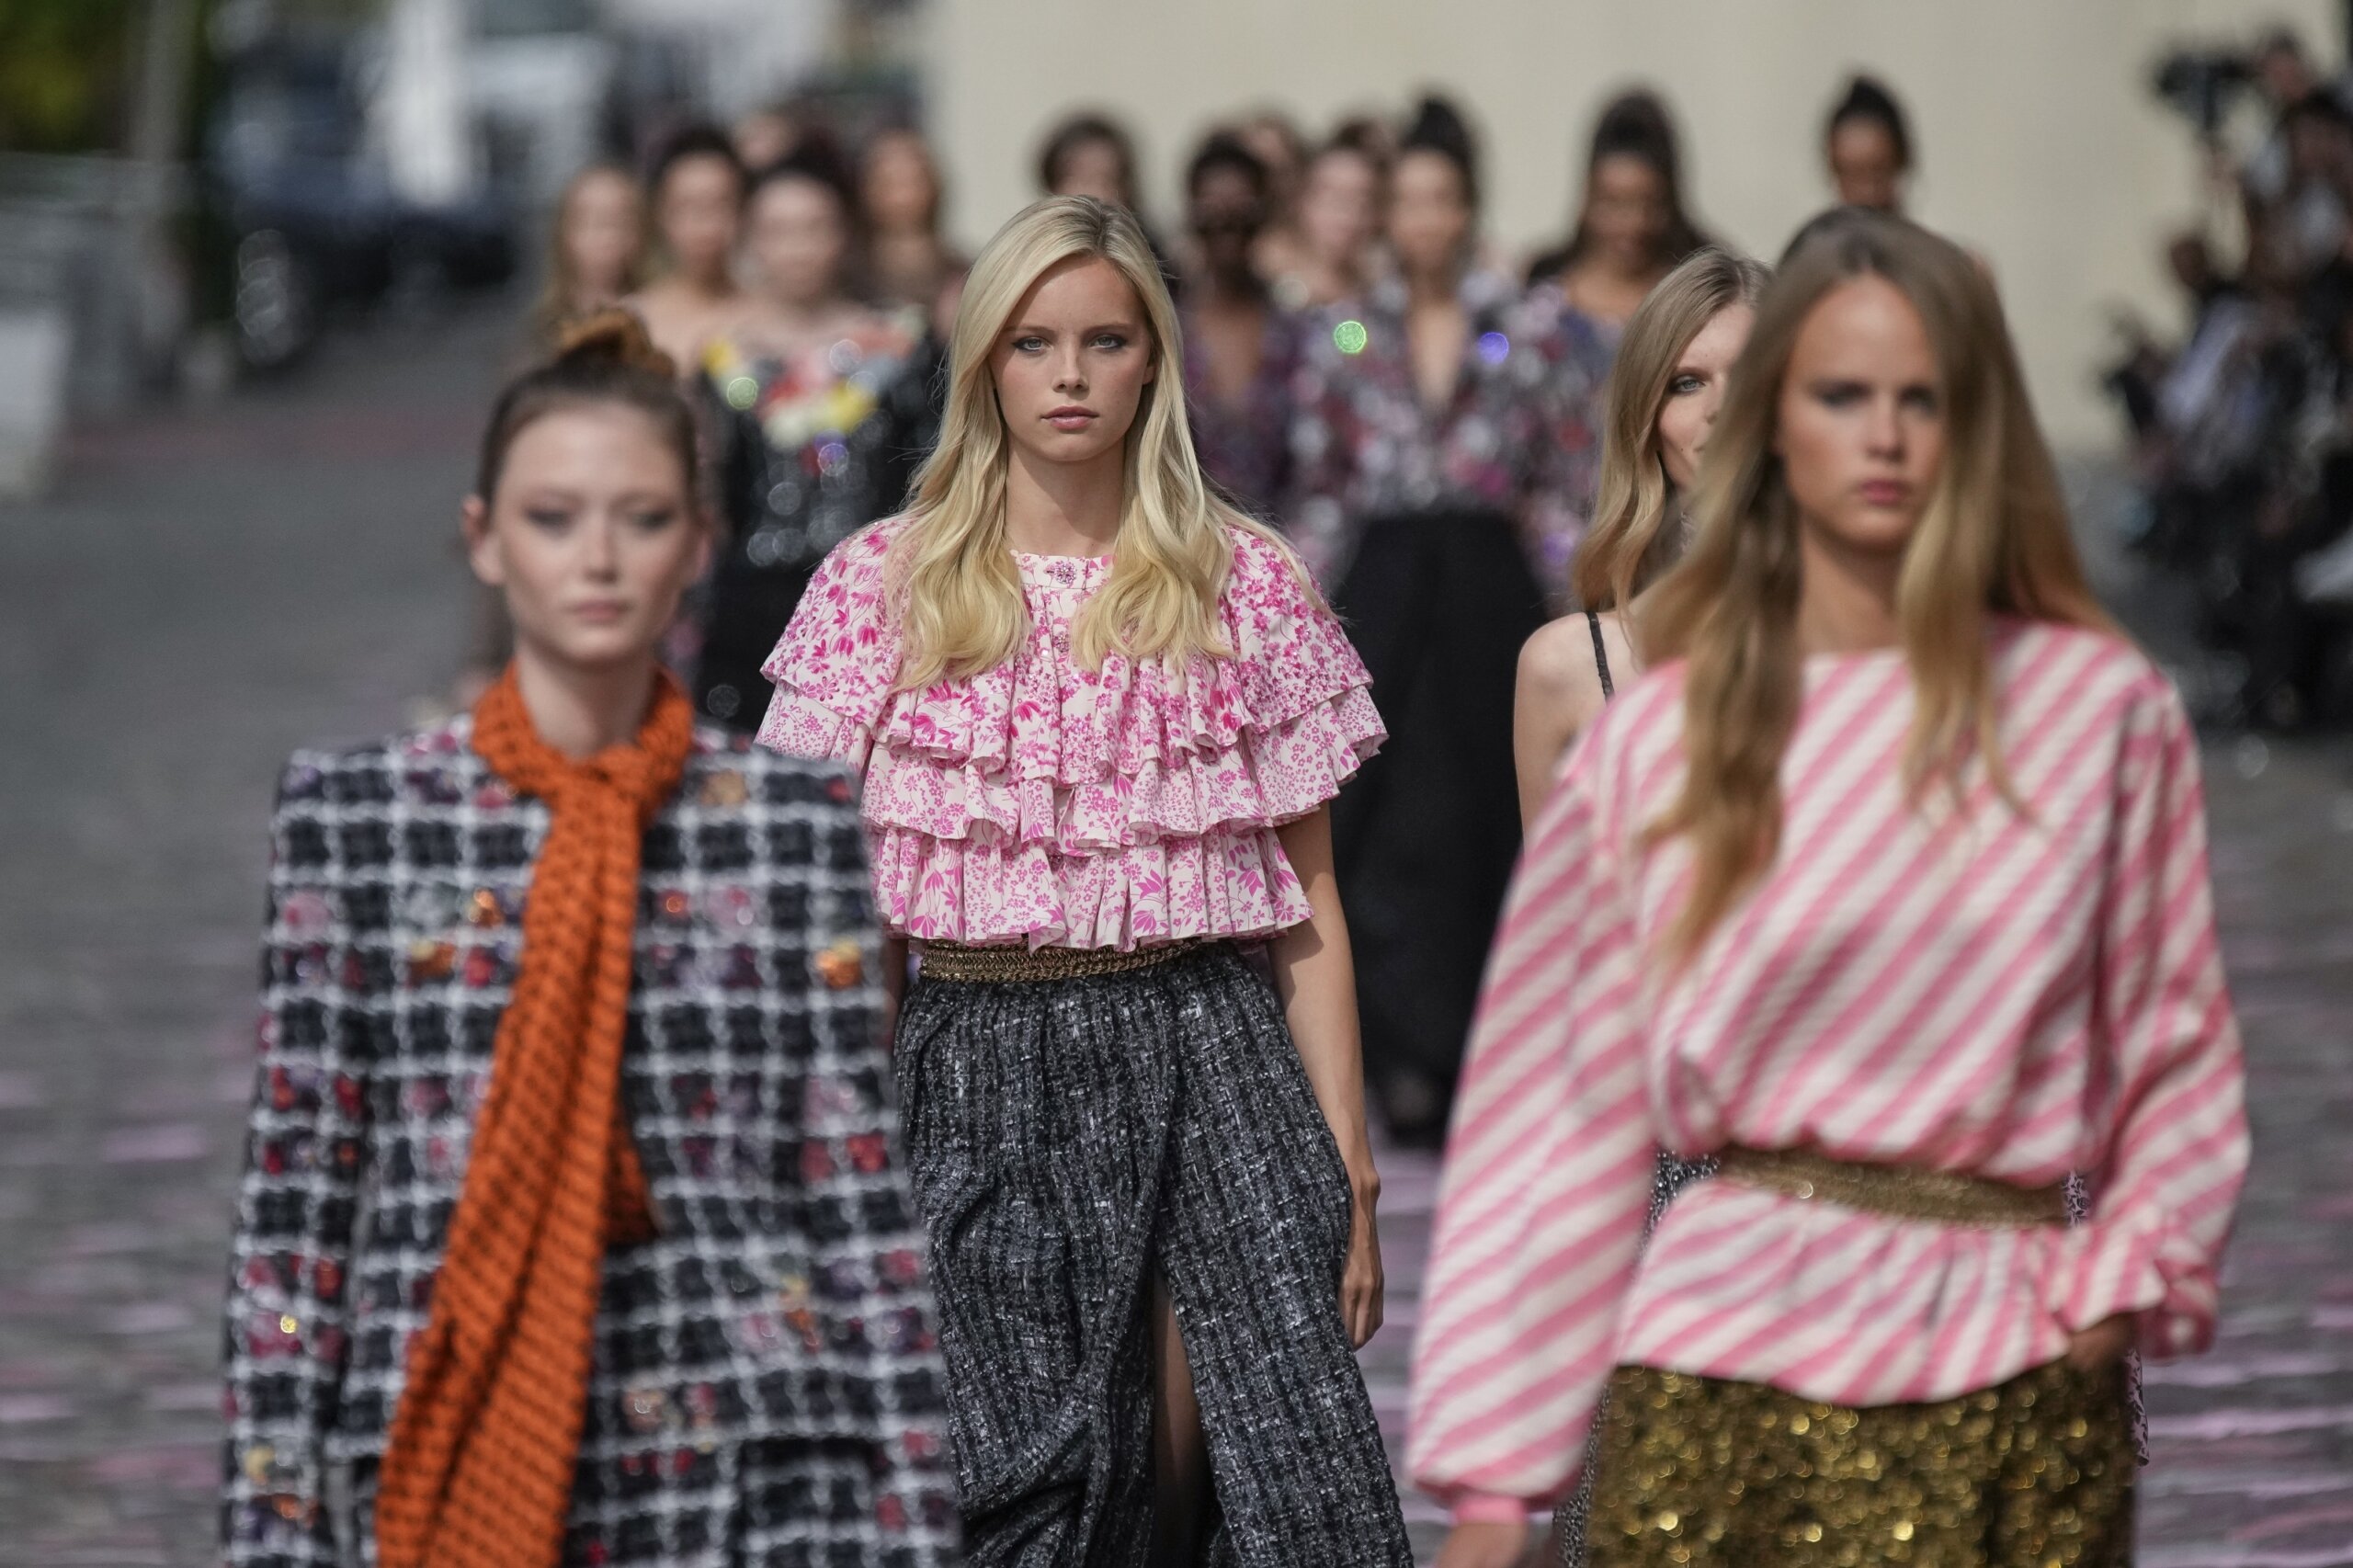 Paris Fashion House, Chanel, says 'Punk's Not Dead